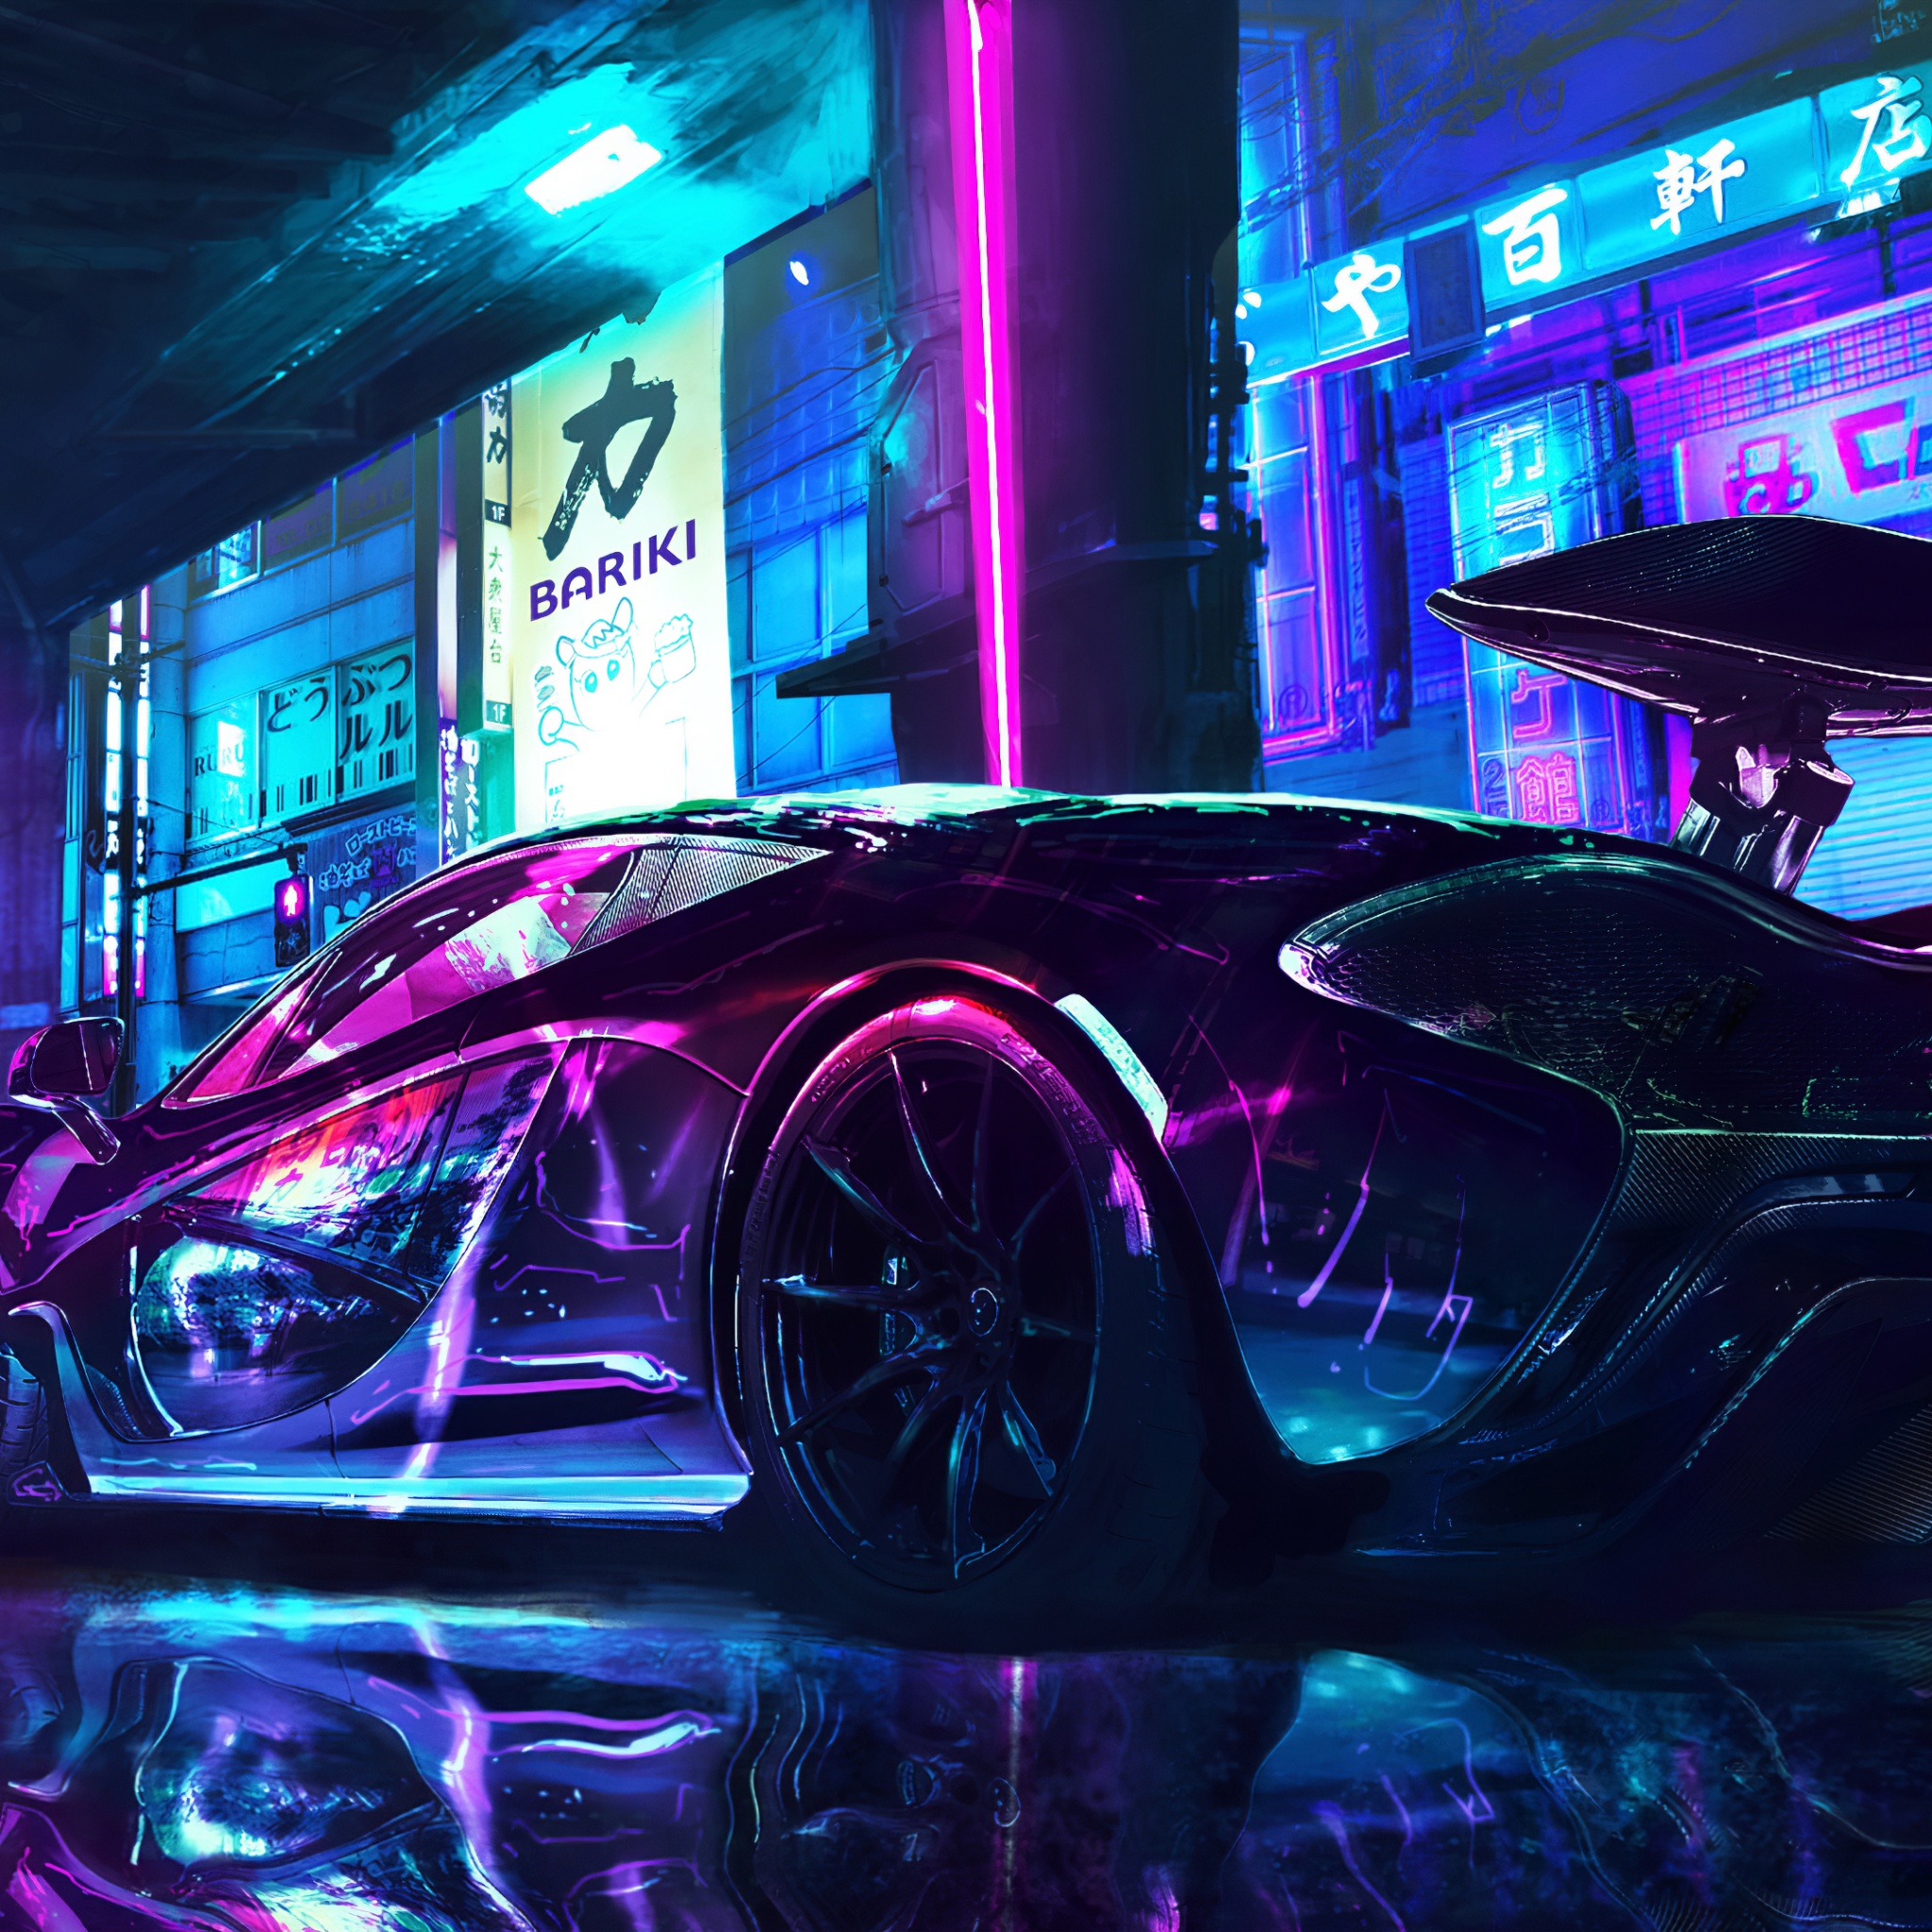 Cyberpunk 4K Wallpaper, McLaren, Supercars, Neon art, Cars, #1003